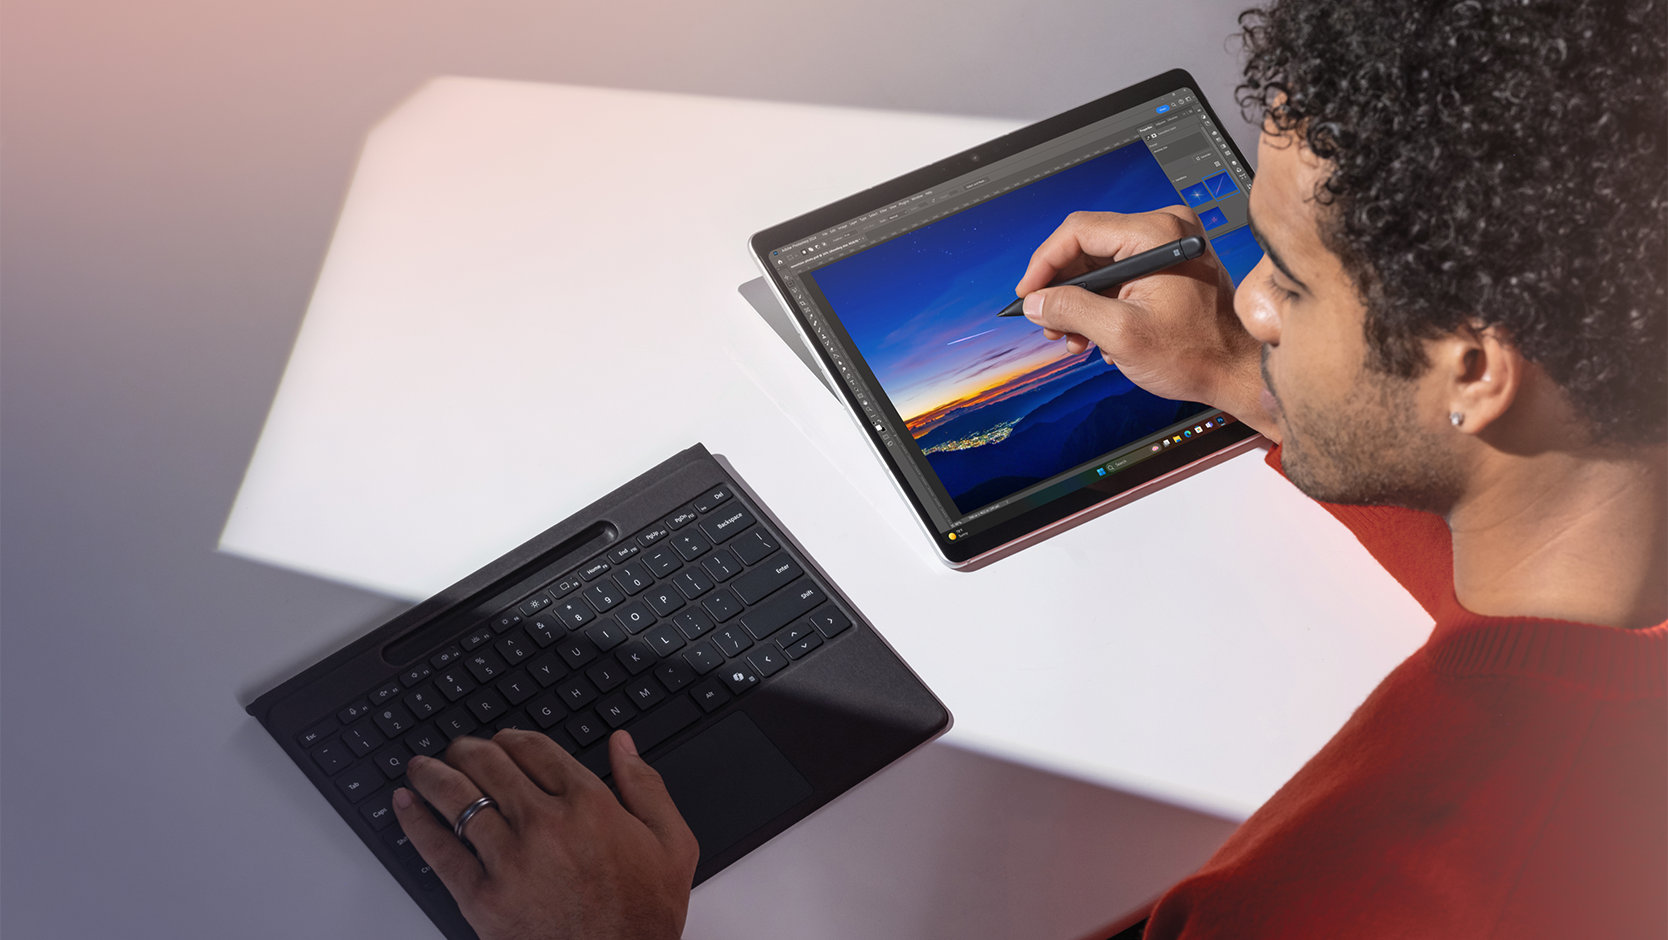 取り外した 法人向け Surface Pro フレックス キーボード（ペン格納トレイ付き）でタイピングしながら、法人向け Surface スリム ペン を使用して Surface デバイスの画面で描画する人。